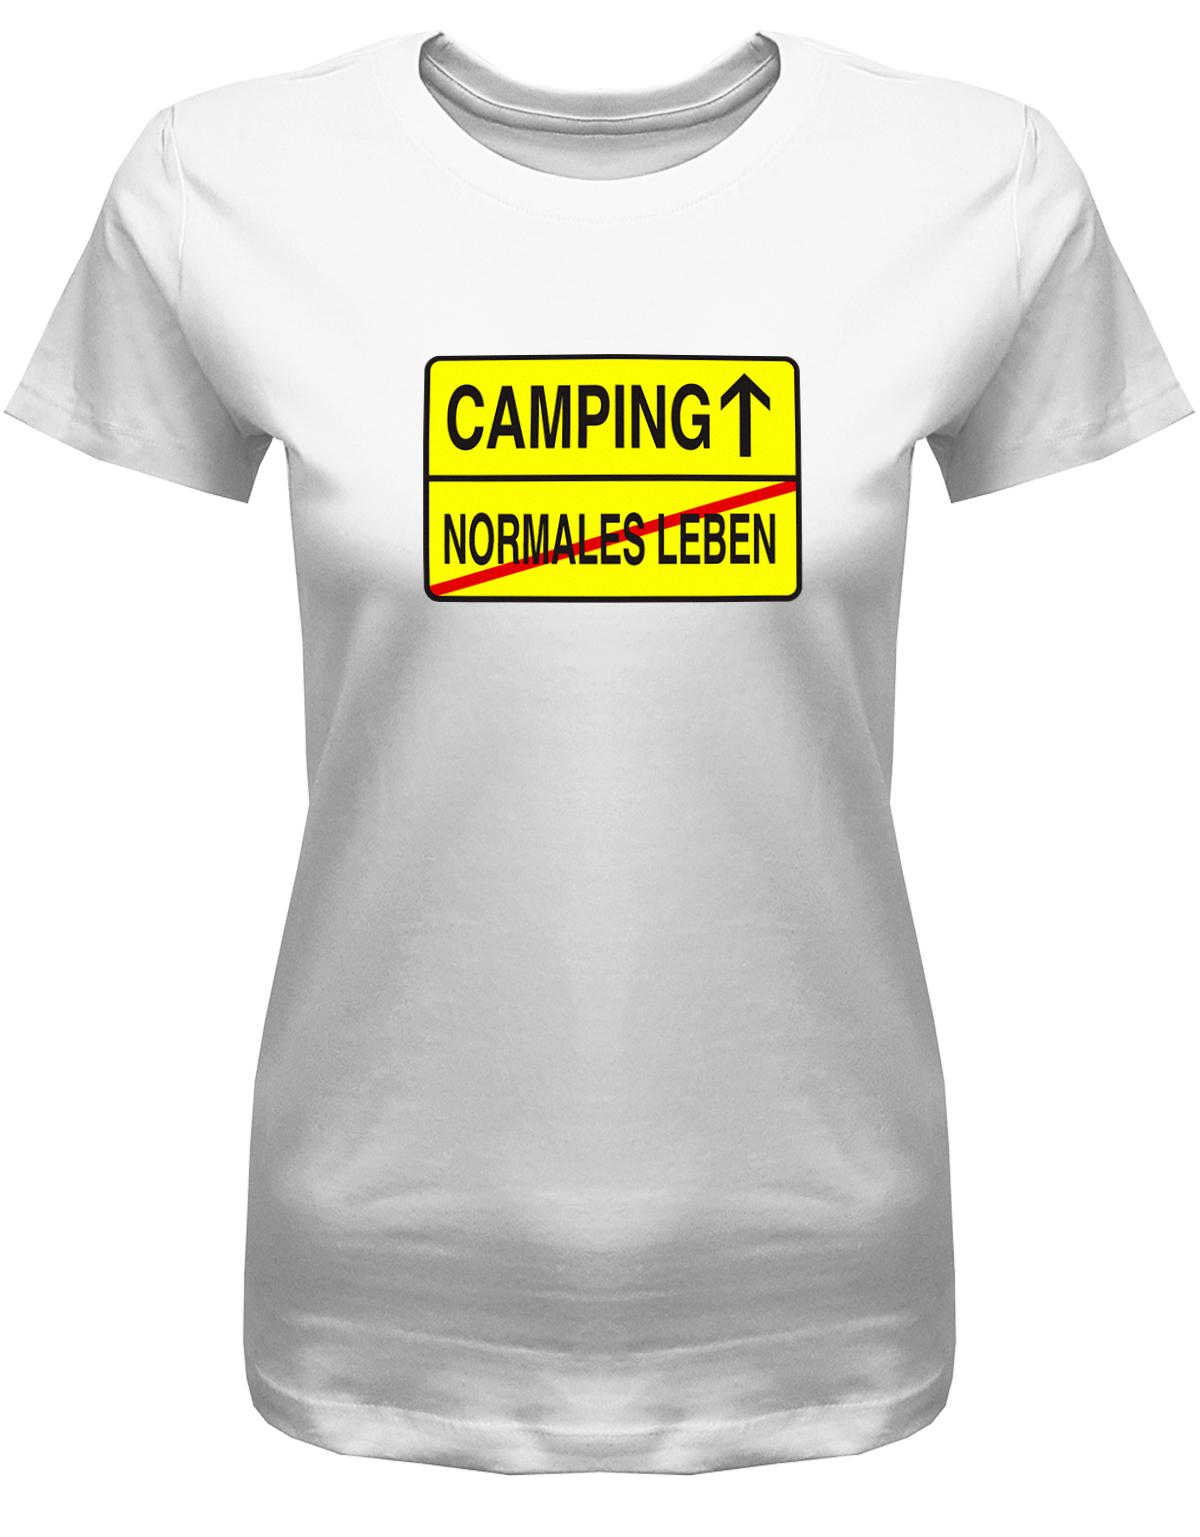 Camping-Normales-leben-Ortschild-Damen-Camping-Shirt-weiss